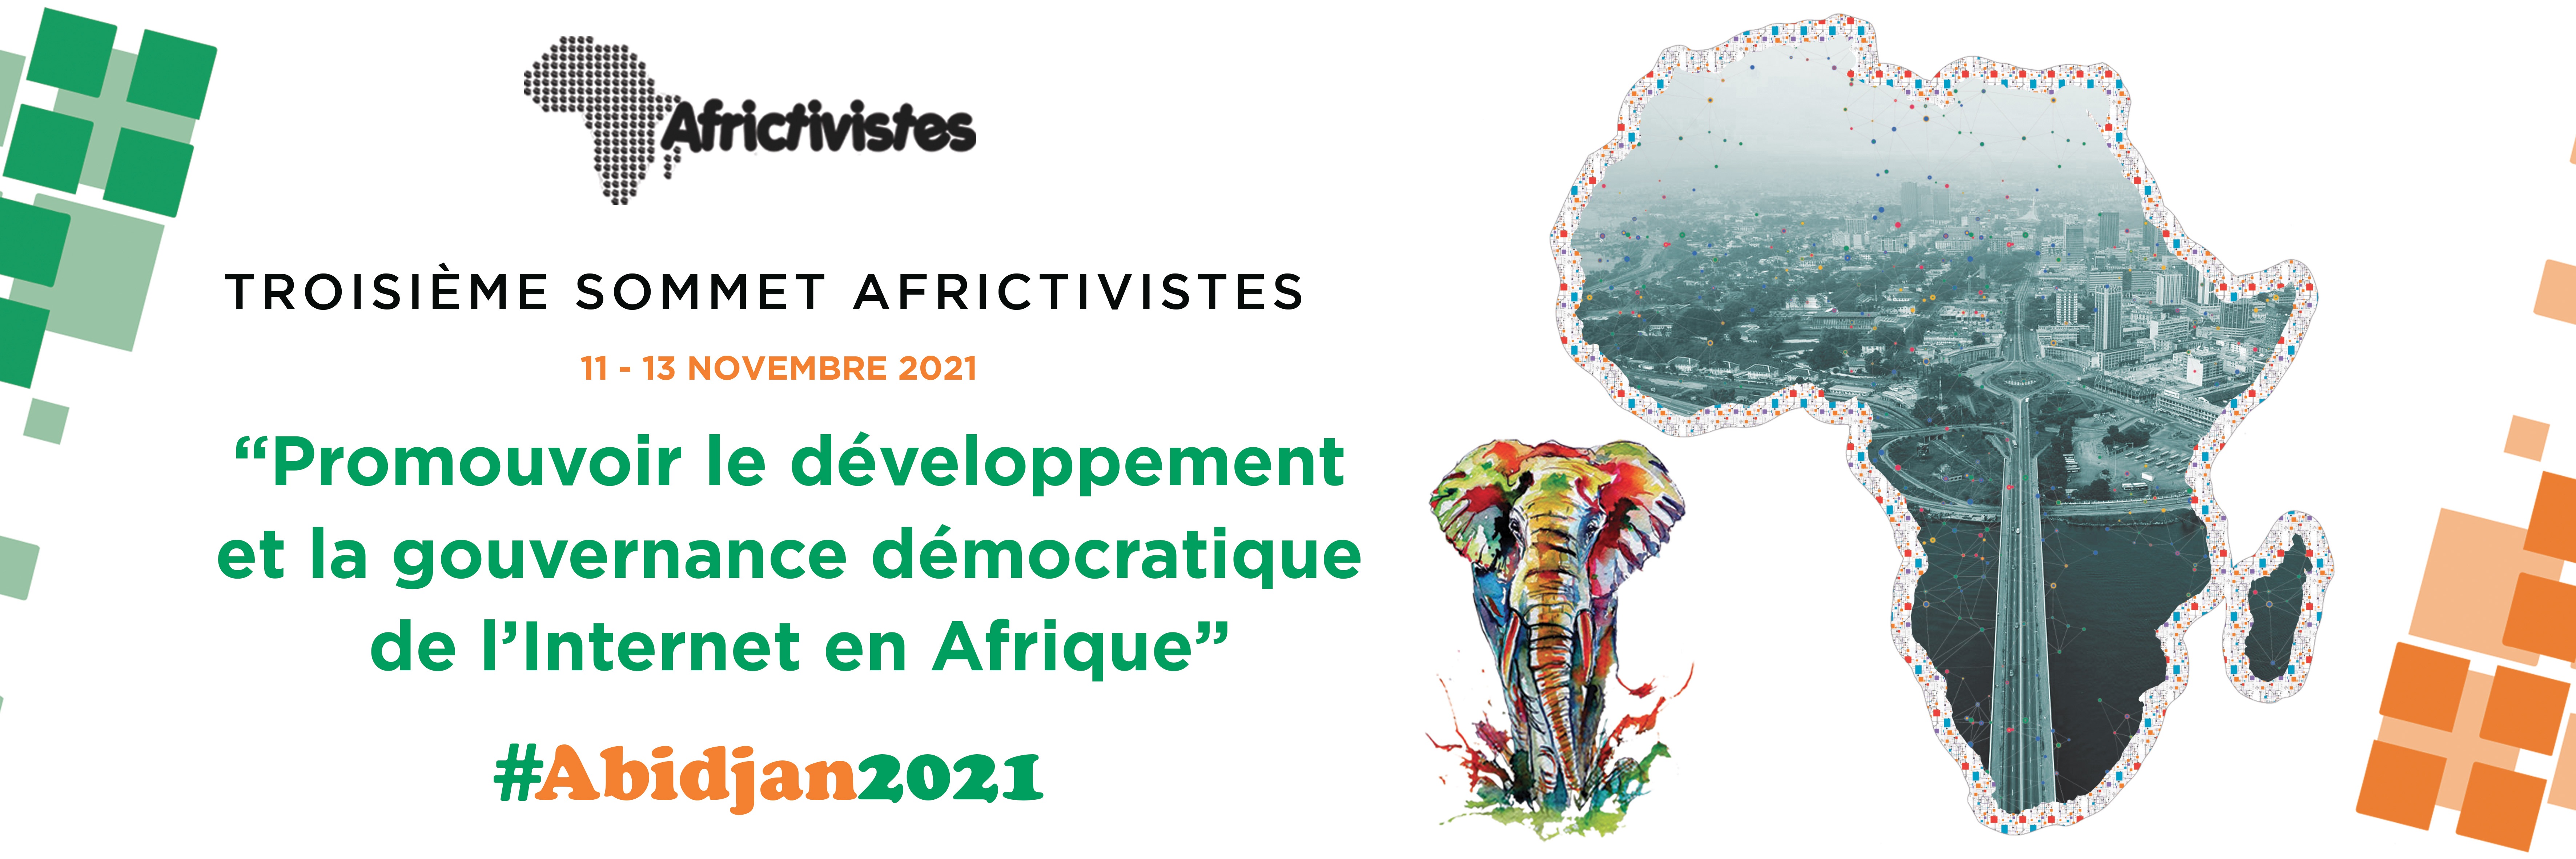 Bache-Abidjan2021-FR.jpg